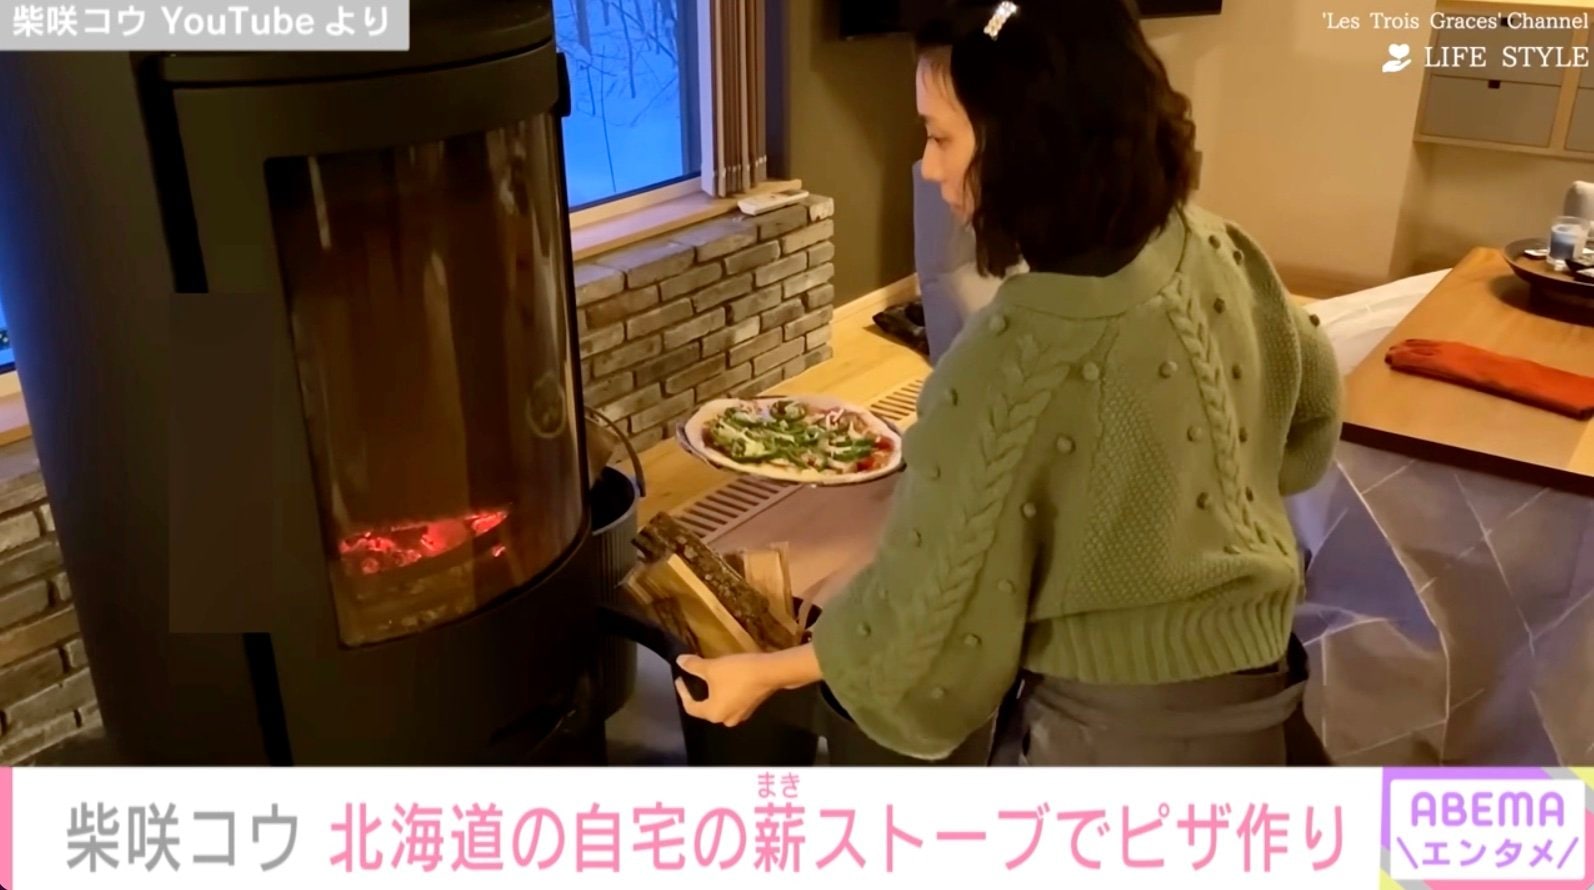 柴咲コウ、北海道の自宅の薪ストープでピザ作り「こういう生活憧れる